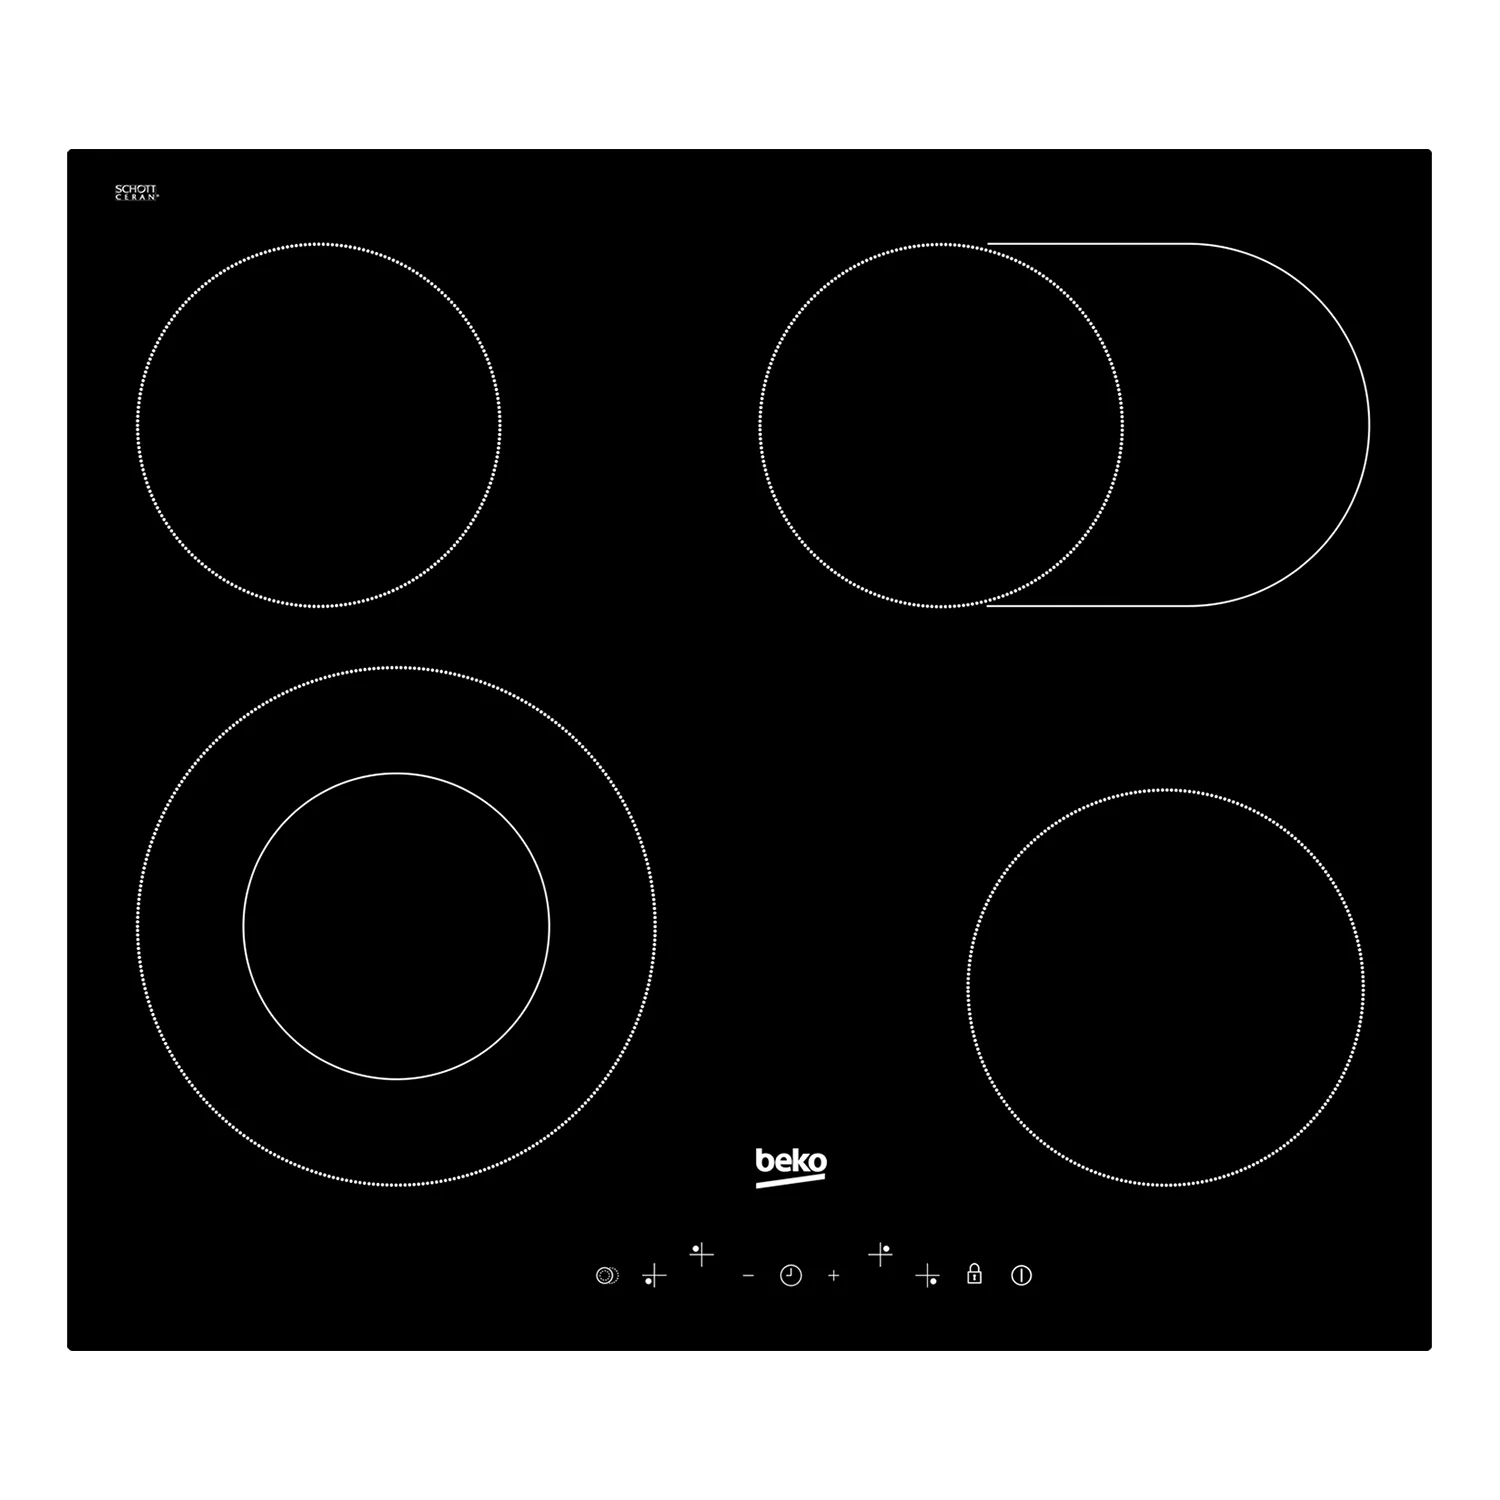 Ugradbena staklokeramička ploča za kuvanje sa proširivim zonama za kuvanje.